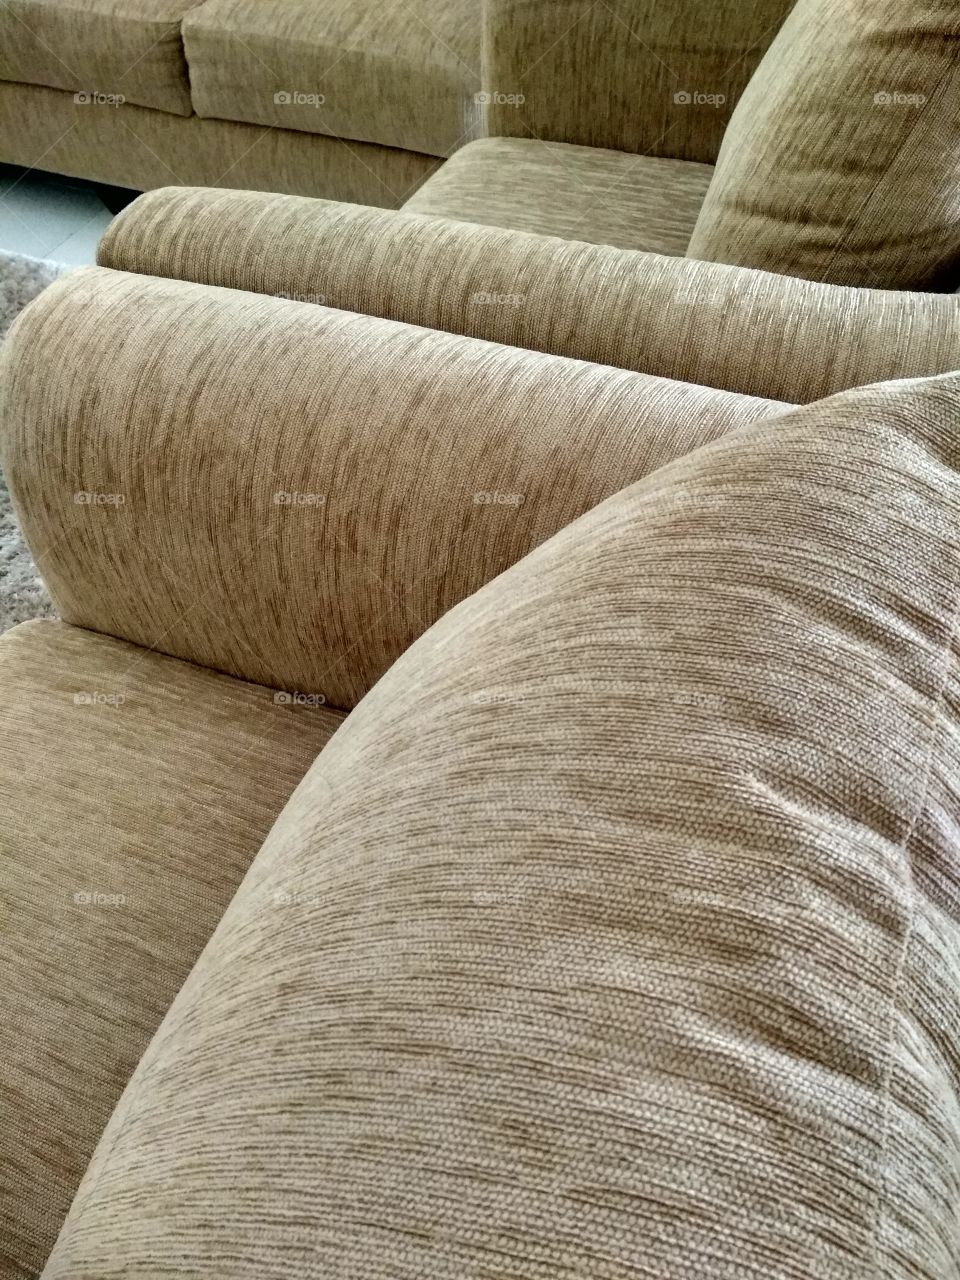 Enjoyable Sofa